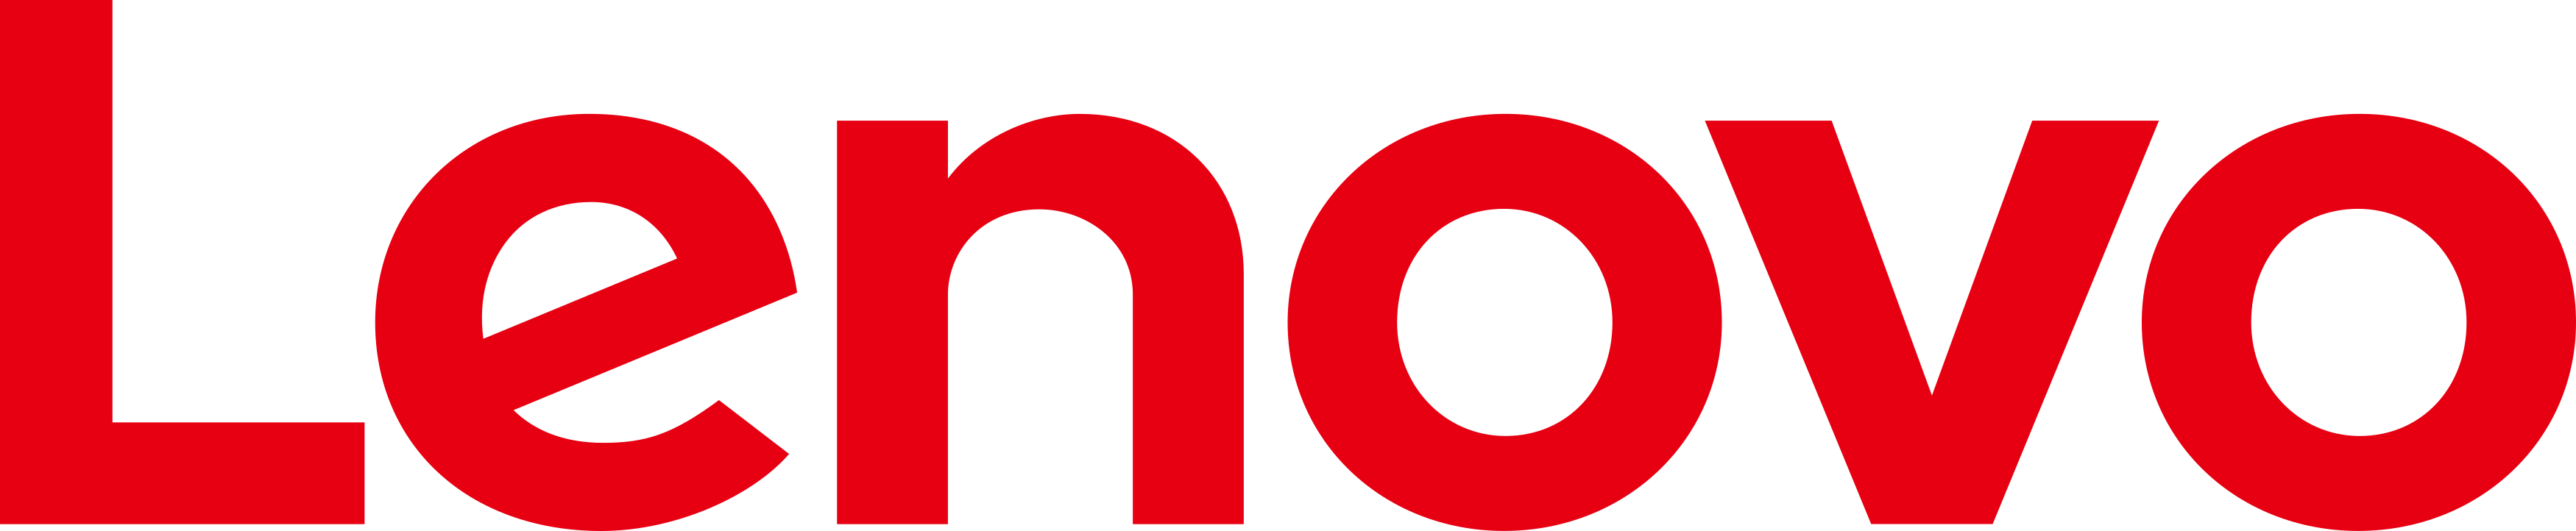 lenovo logo 1 - Home Comeros